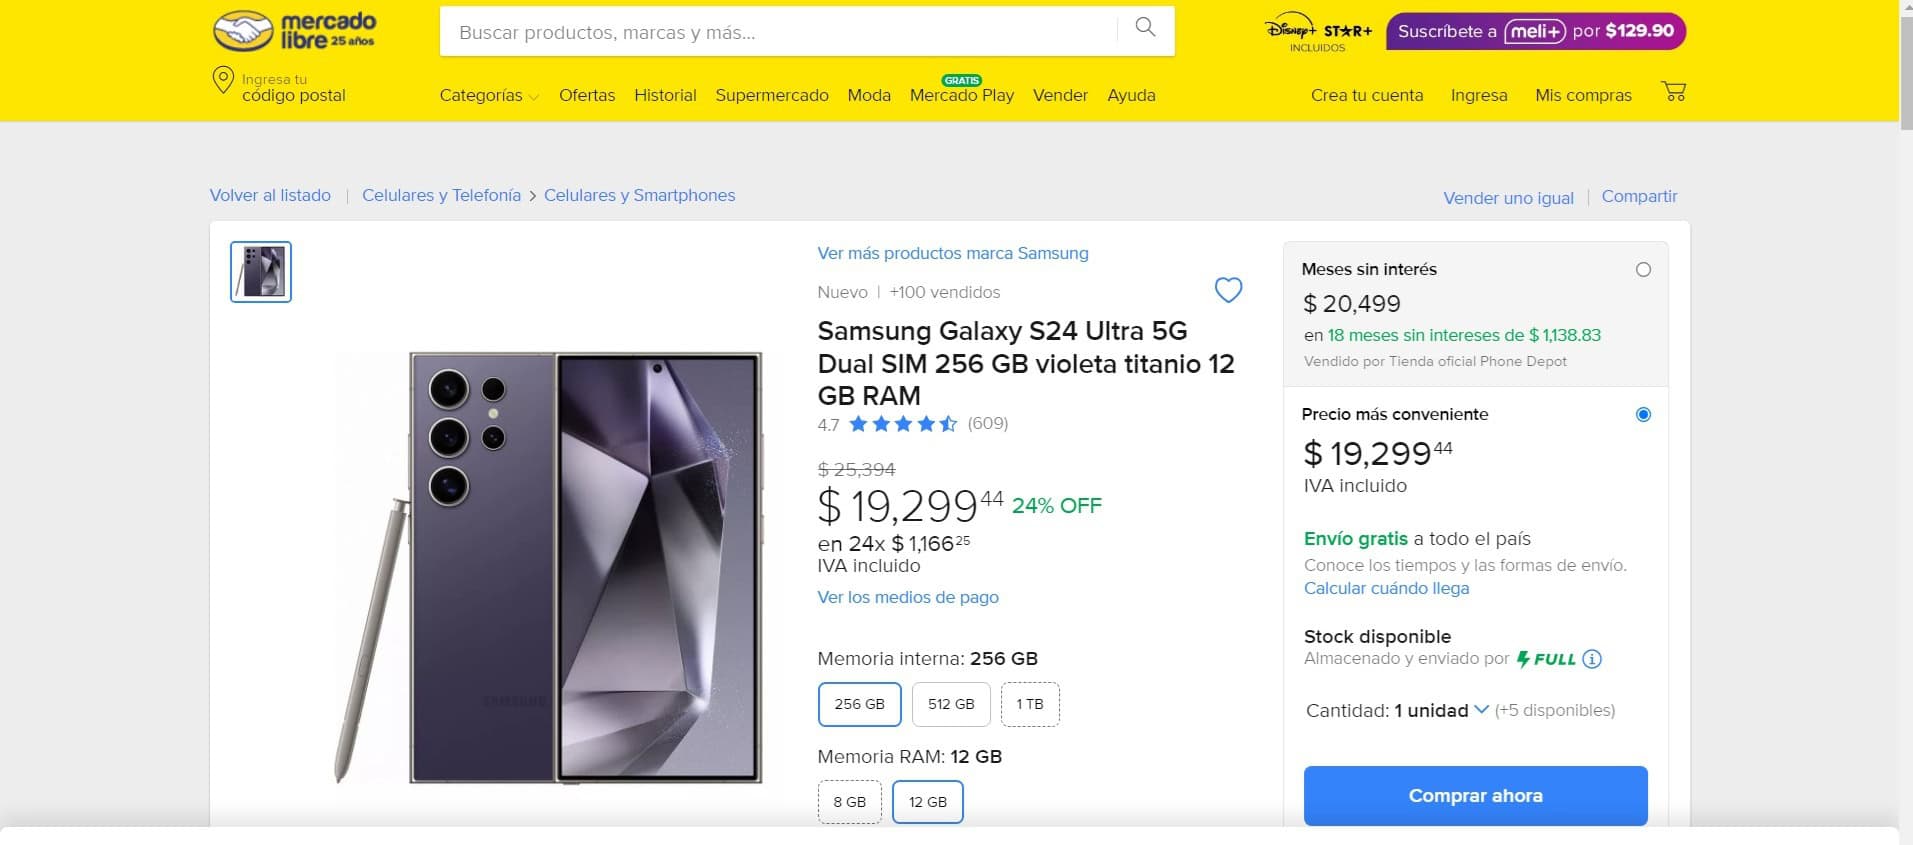 El precio del Samsung Galaxy S24 Ultra